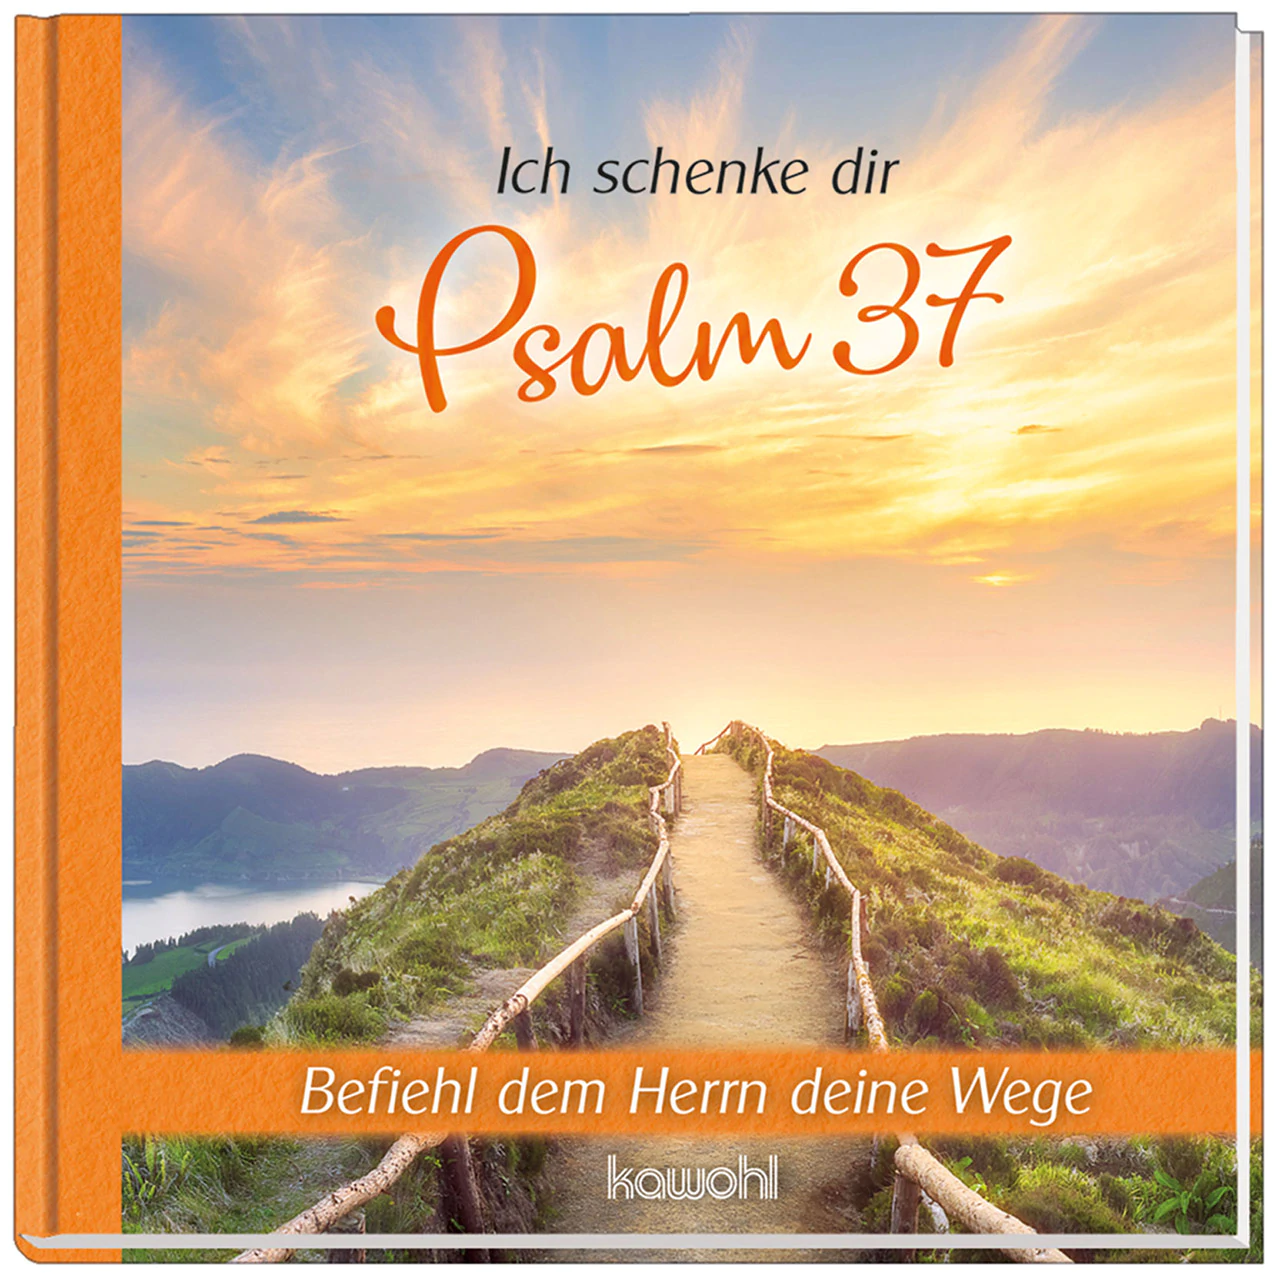 Ich schenke dir Psalm 37 - Befiehl dem Herrn deine Wege